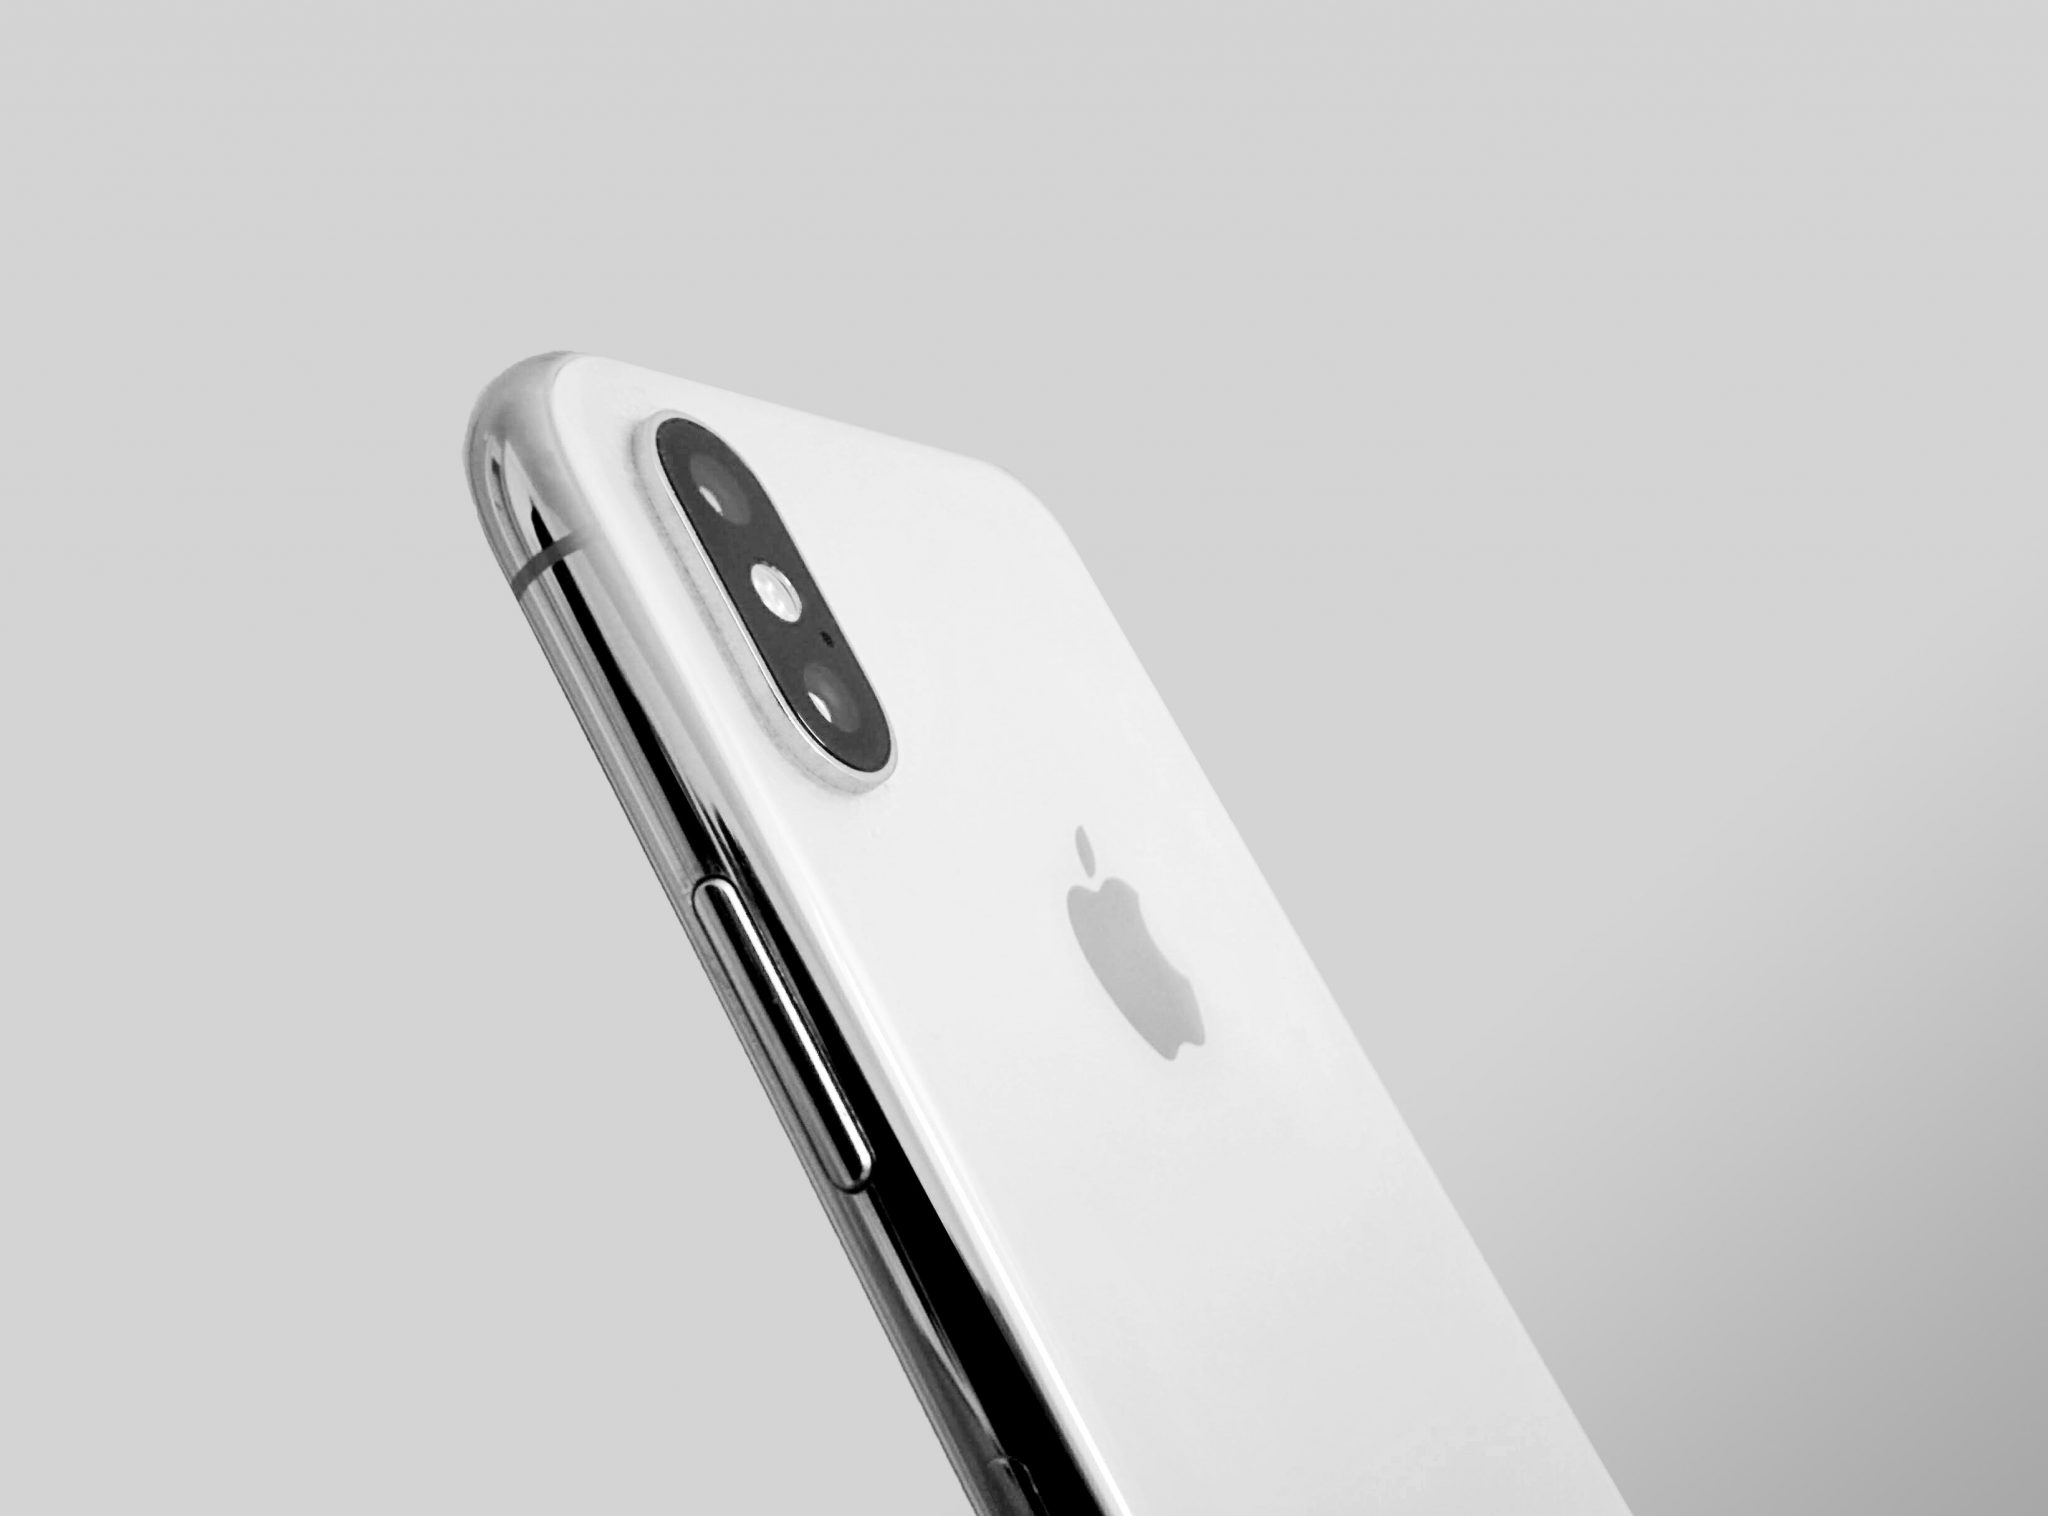 Lateral de iPhone X blanco sobre fondo vacío